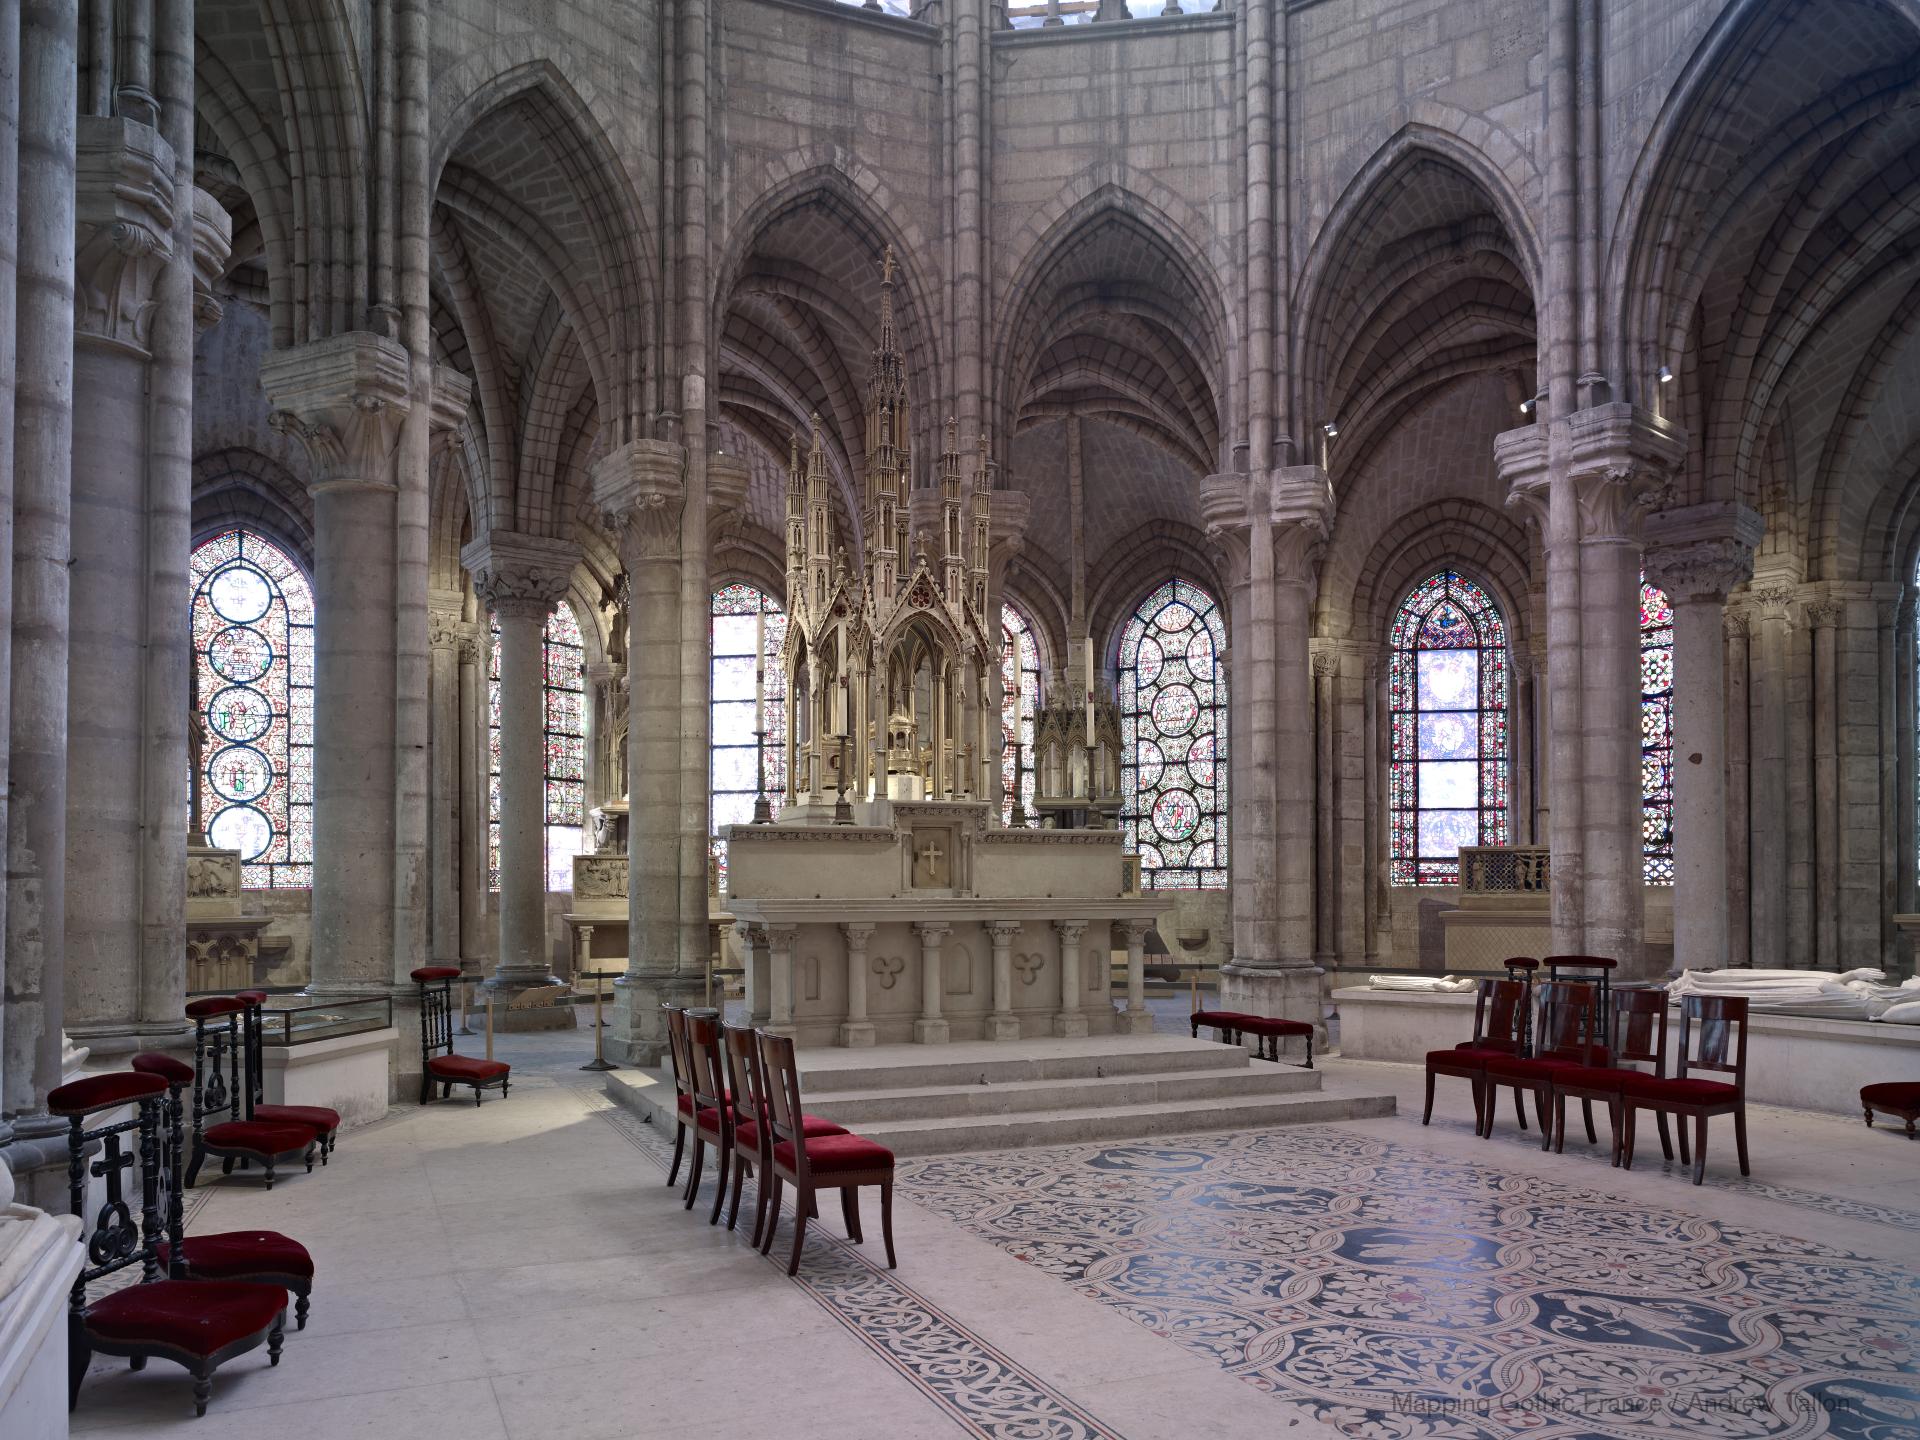 Basilique de Saint-Denis - Interior, chevet, choir looking southeast, altar